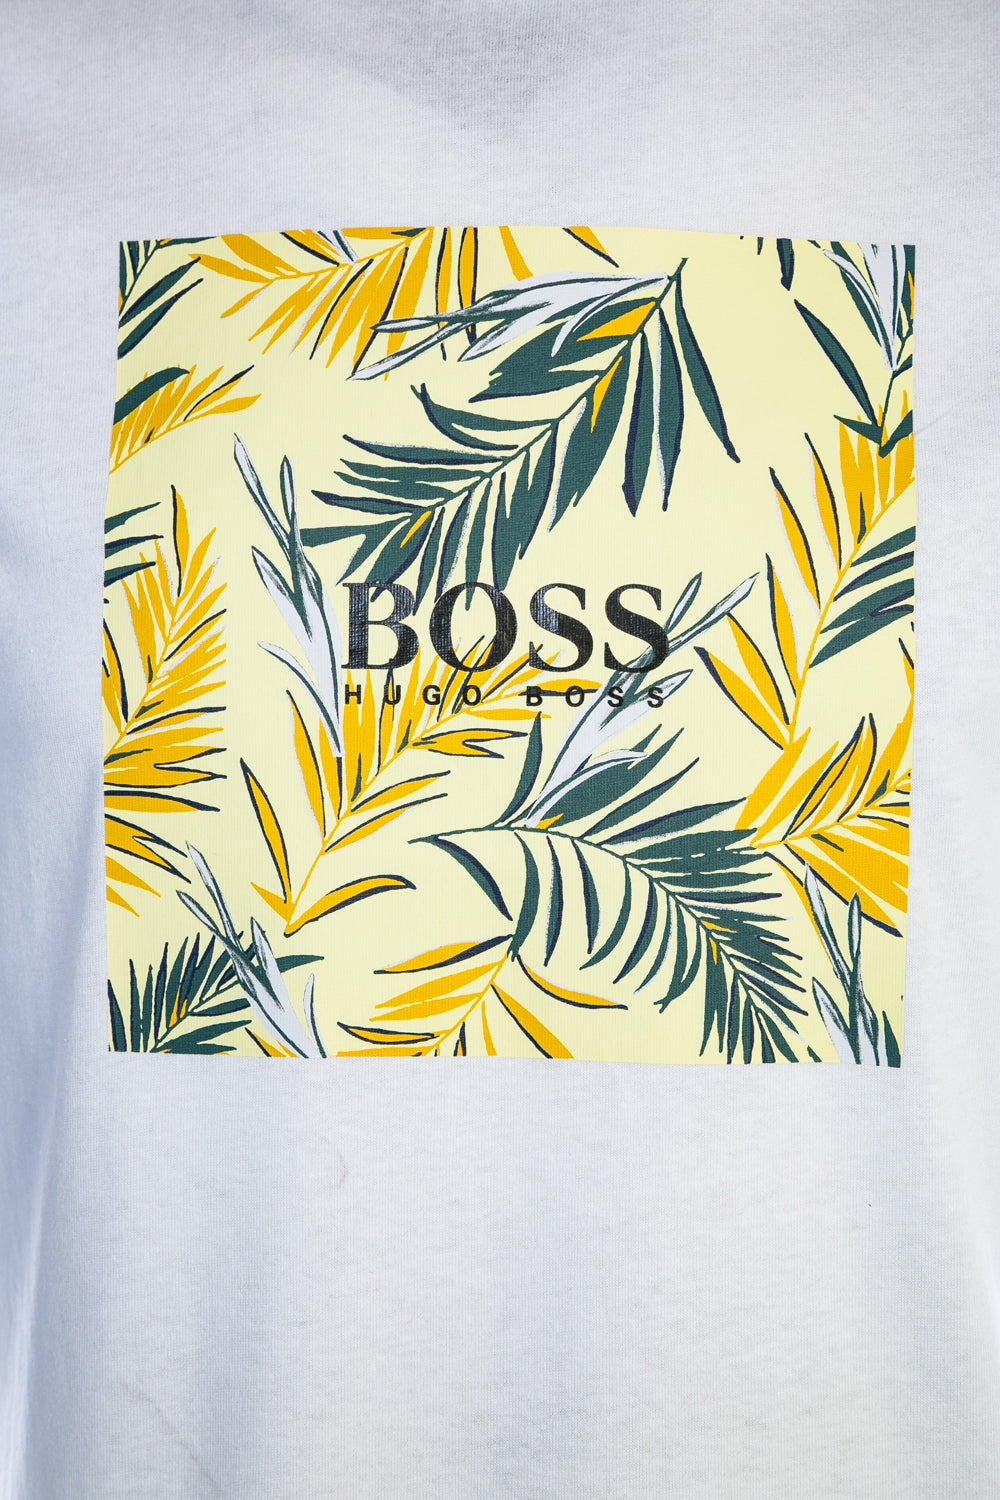 BOSS Troaar 5 T Shirt in White & Yellow Palm